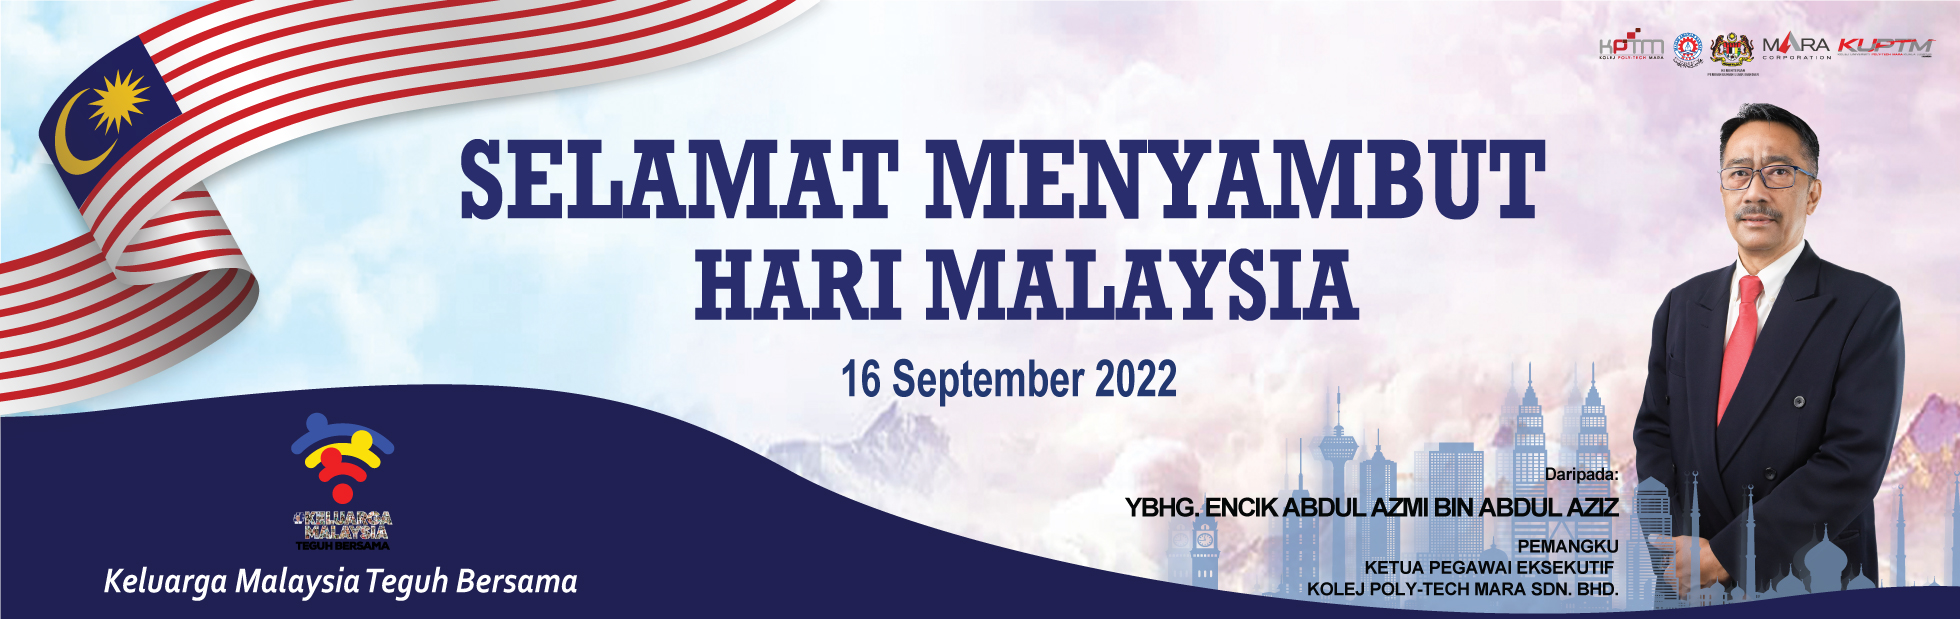 Sambutan Hari Malaysia 2022